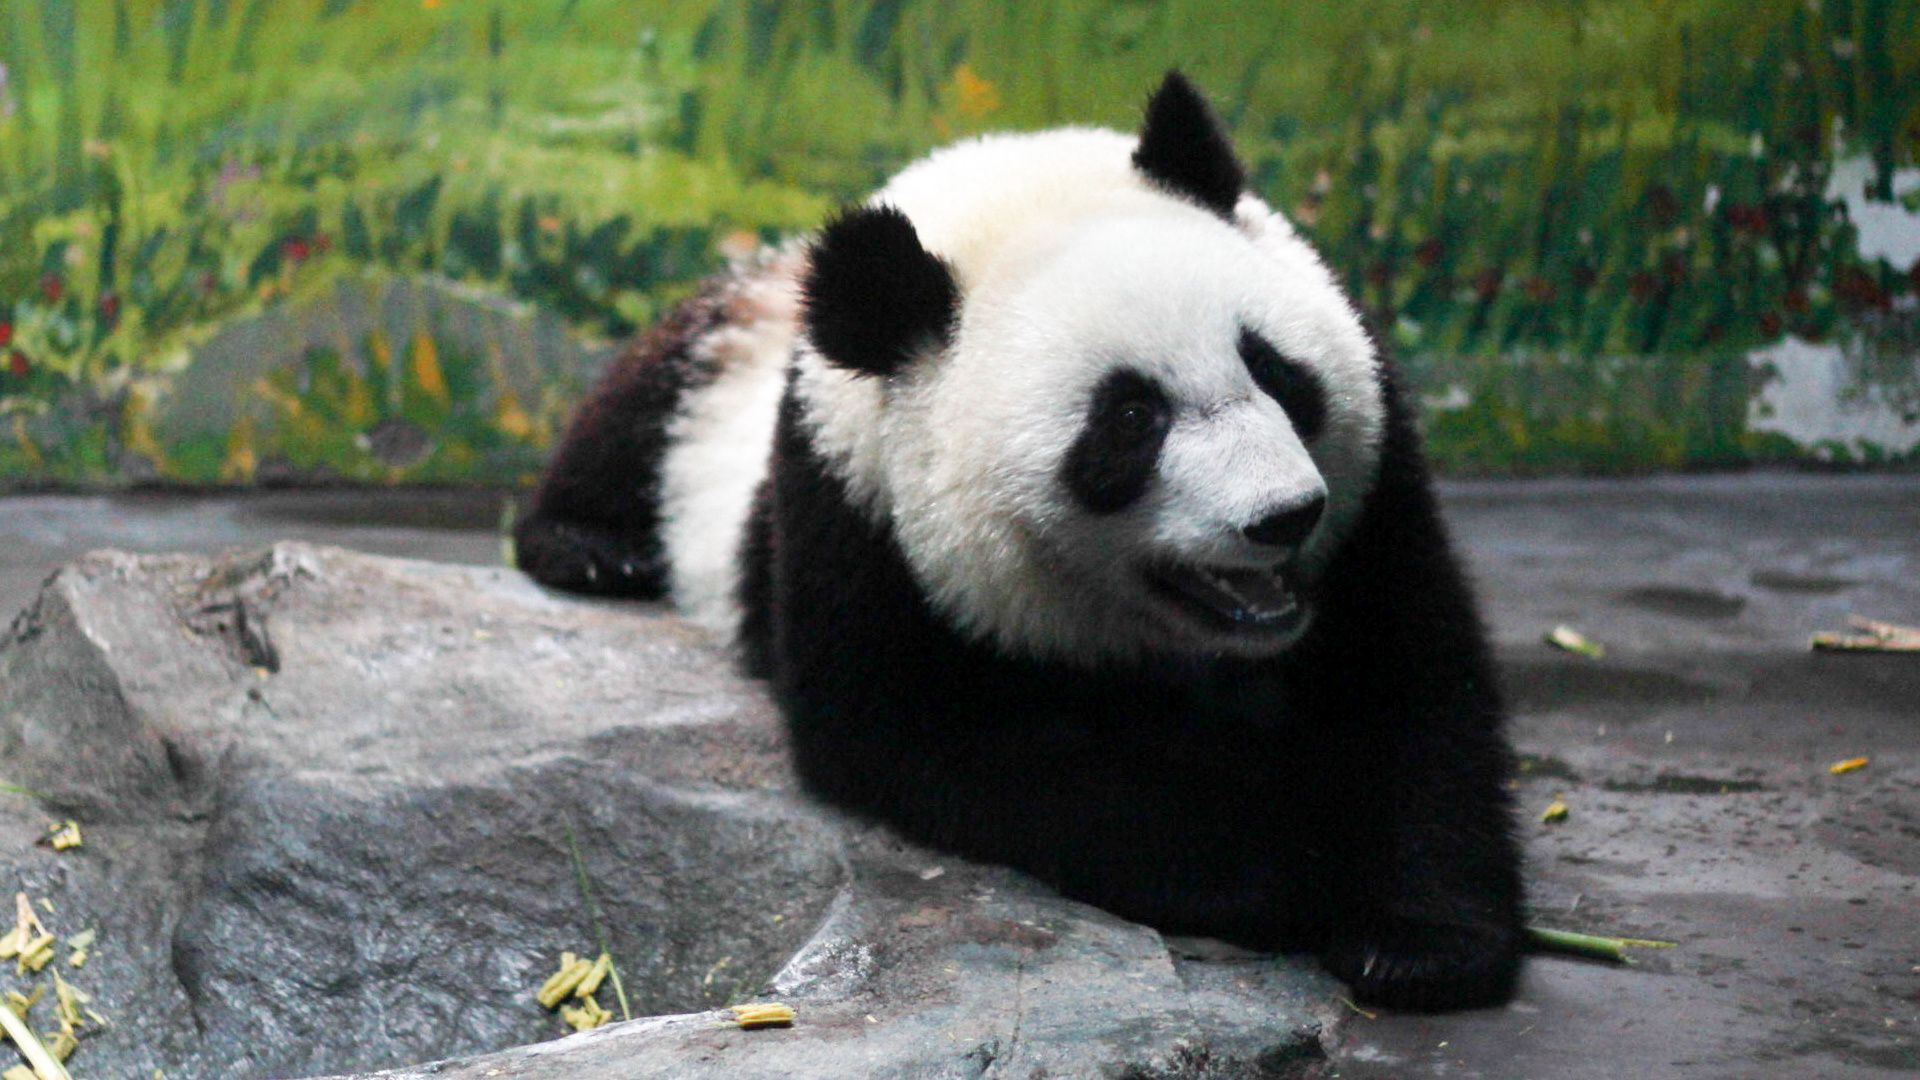 成都大熊猫生态园旅游博物馆攻略,成都大熊猫生态园旅游博物馆门票/游玩攻略/地址/图片/门票价格【携程攻略】